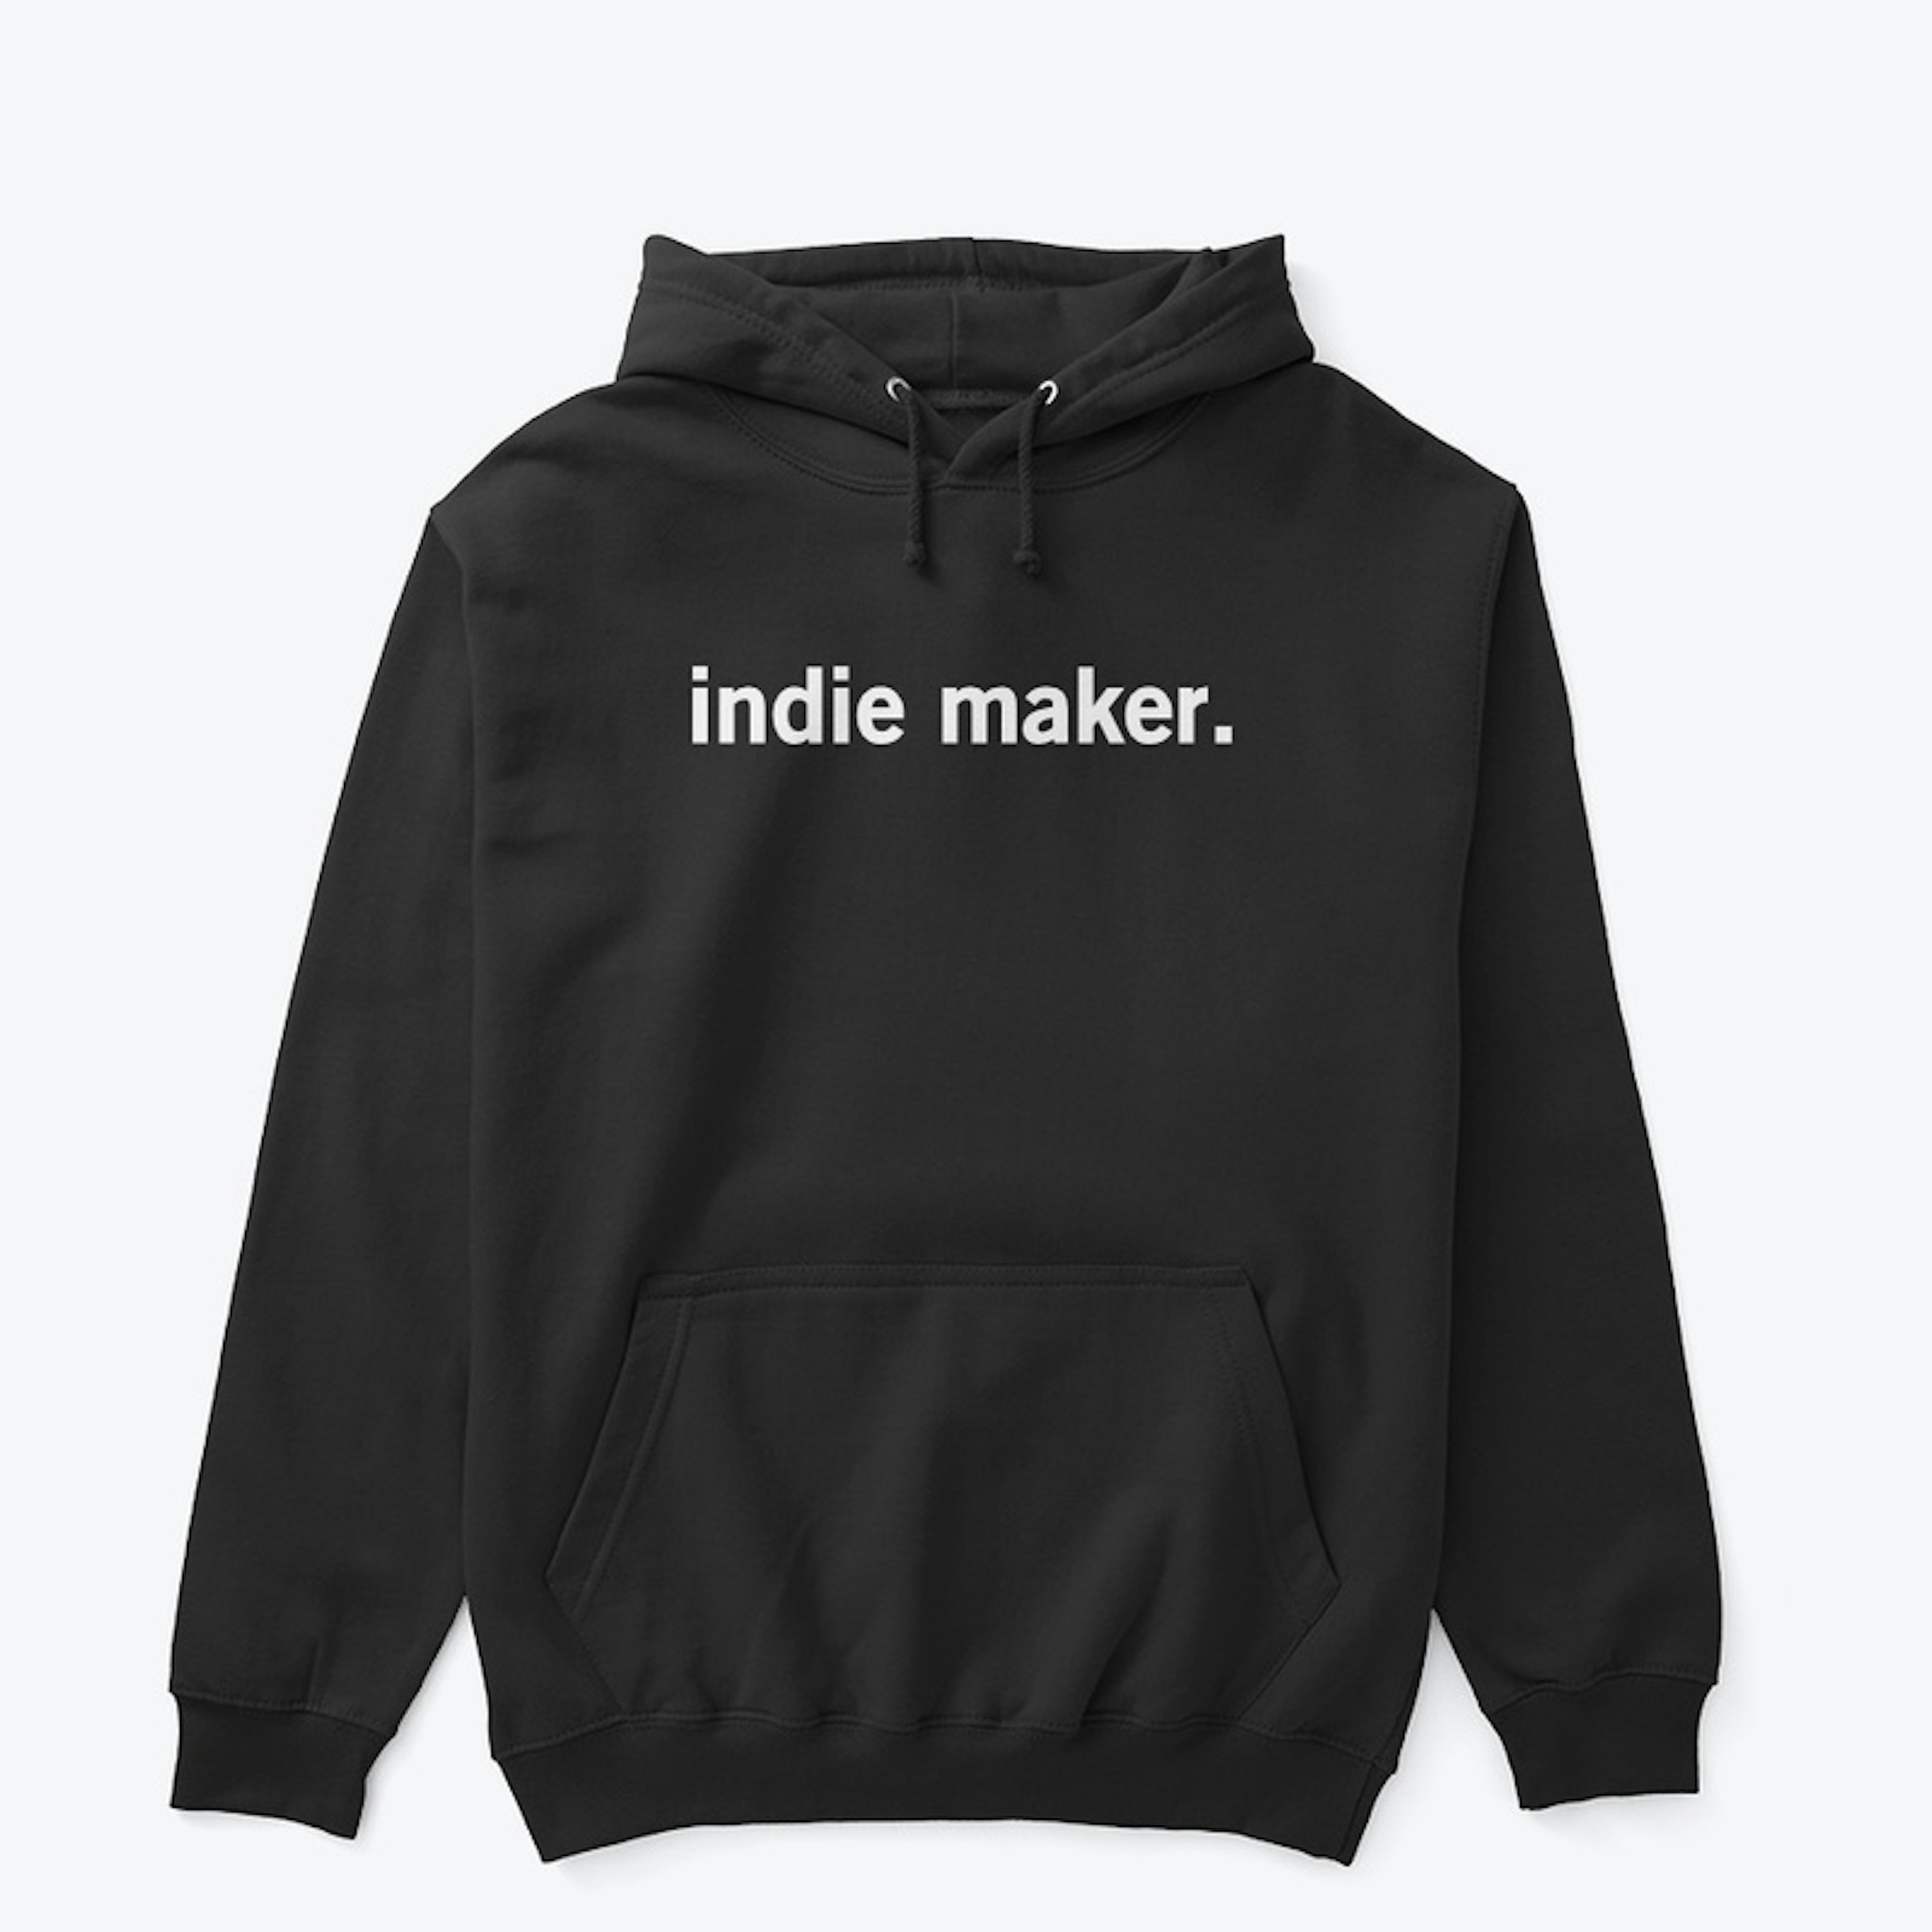 Indie Maker.